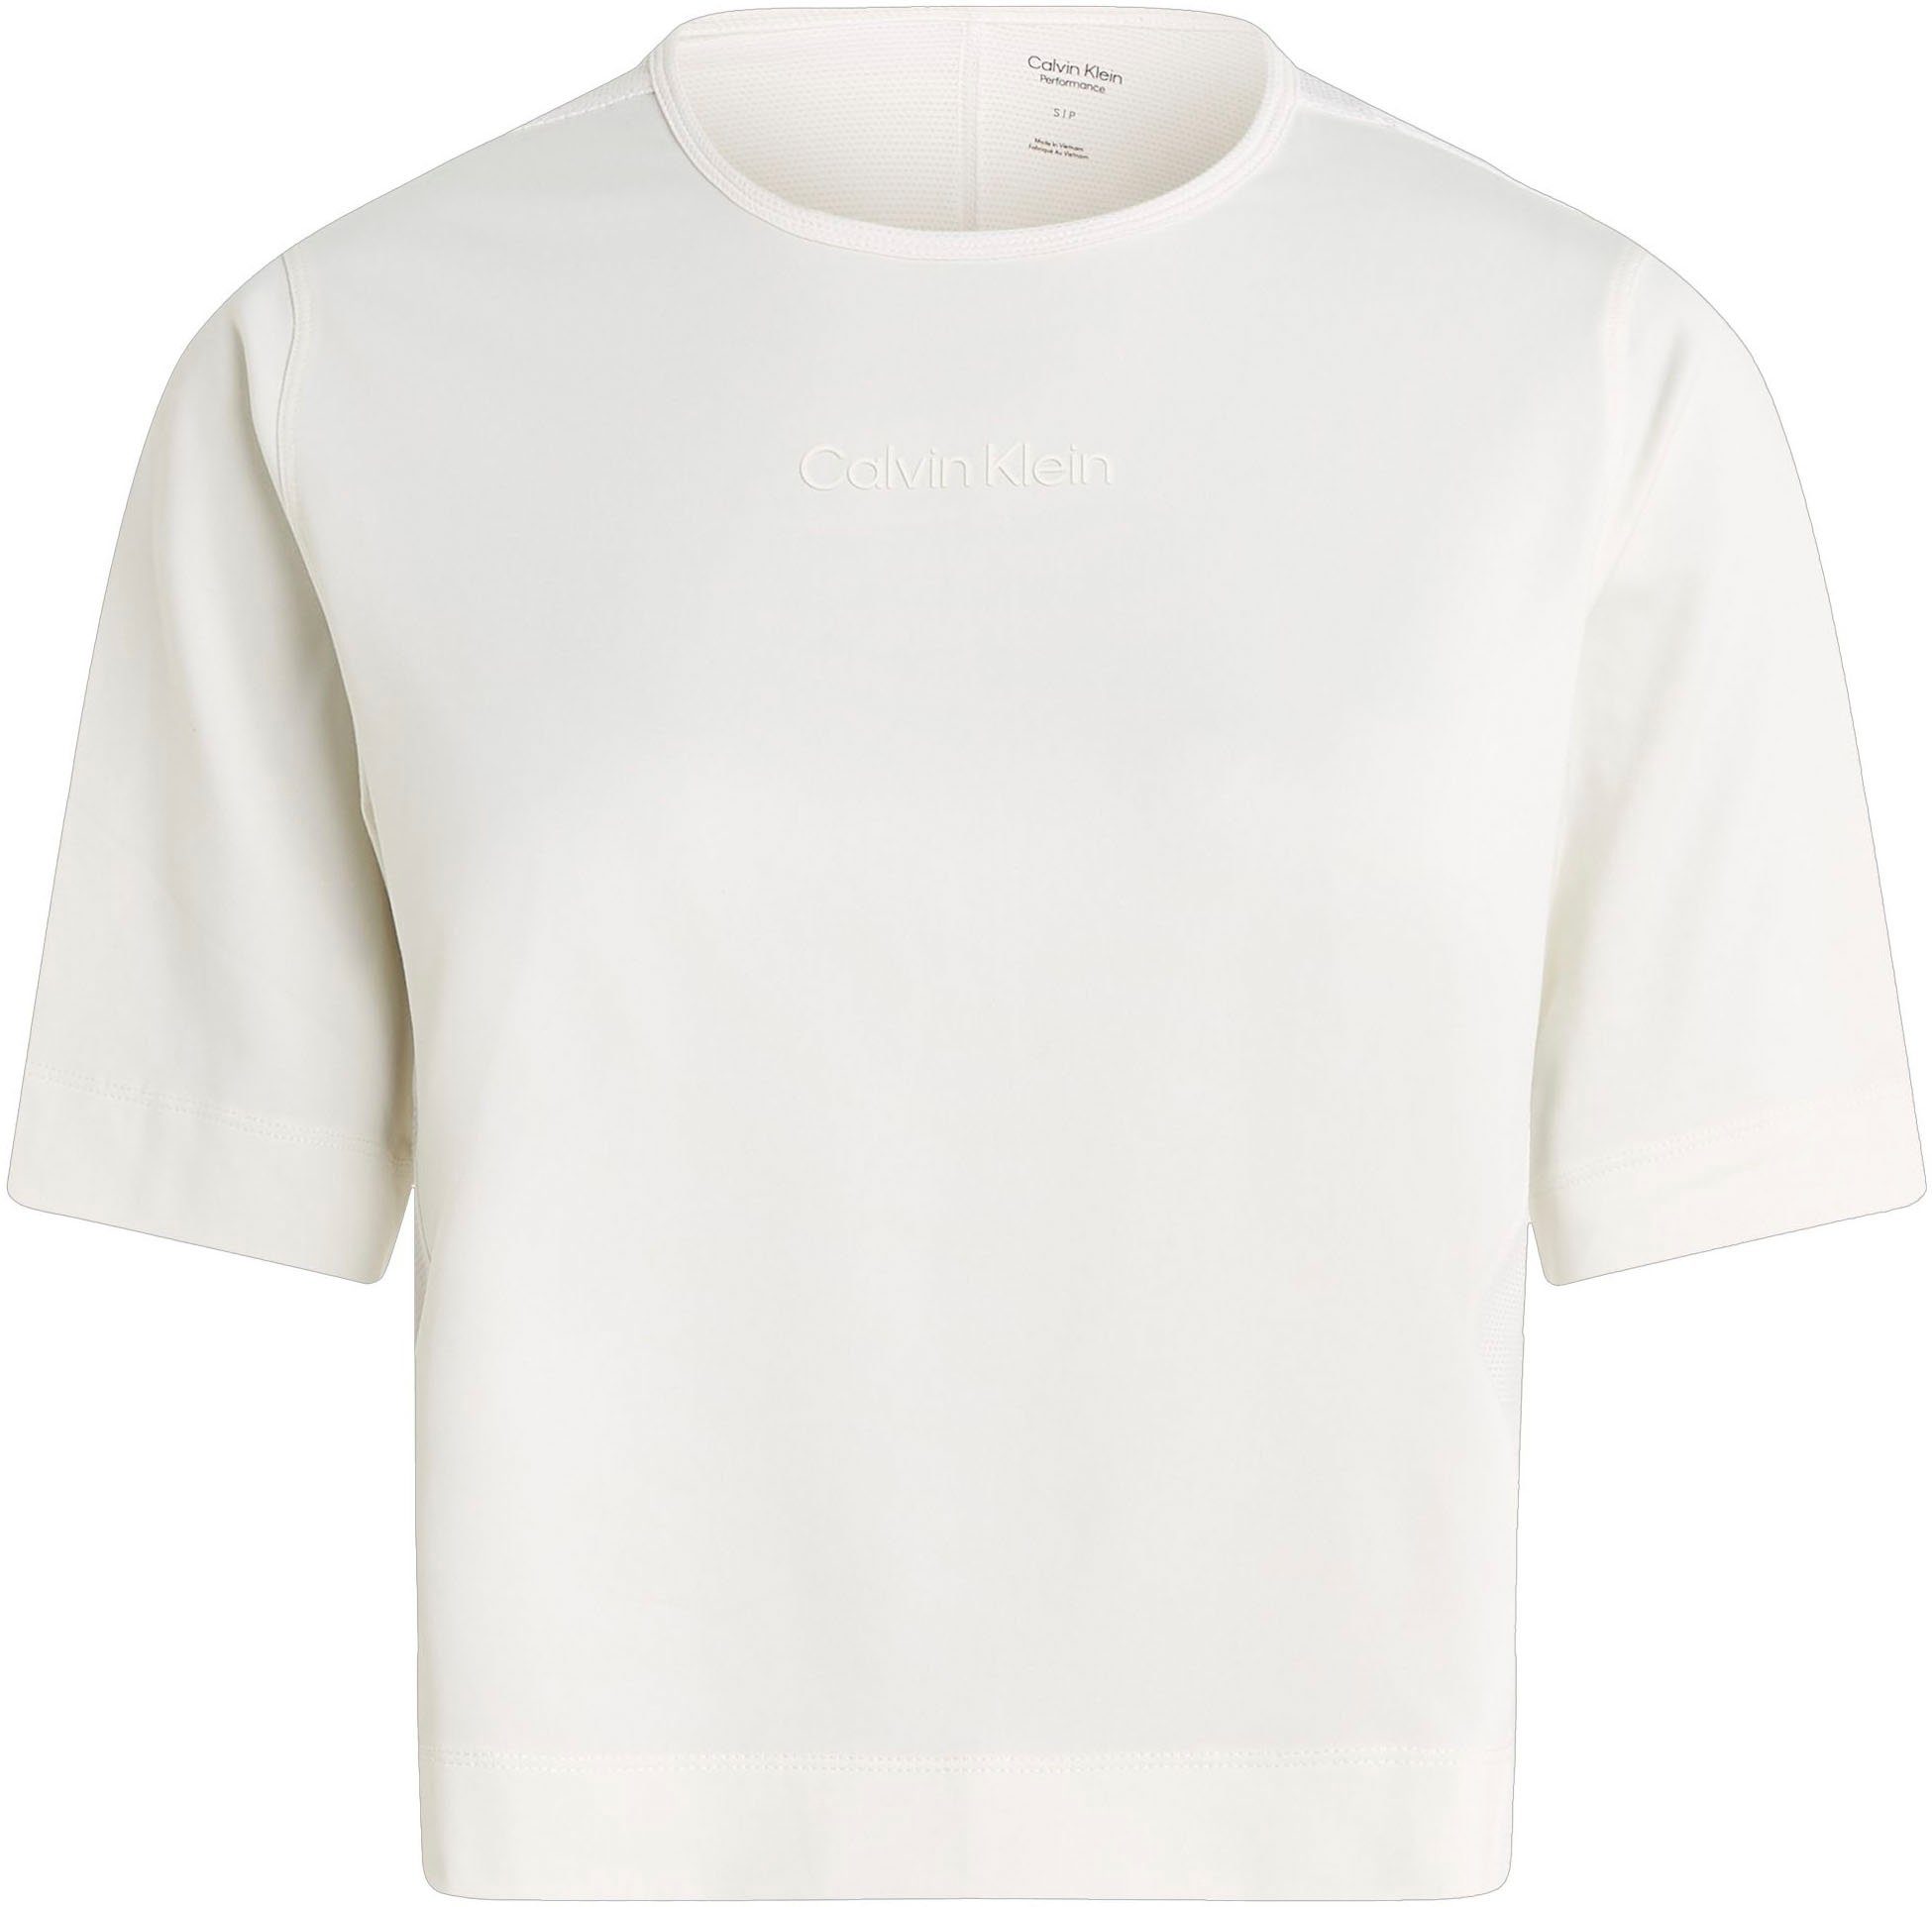 T-Shirt Calvin White Sport Klein Suede